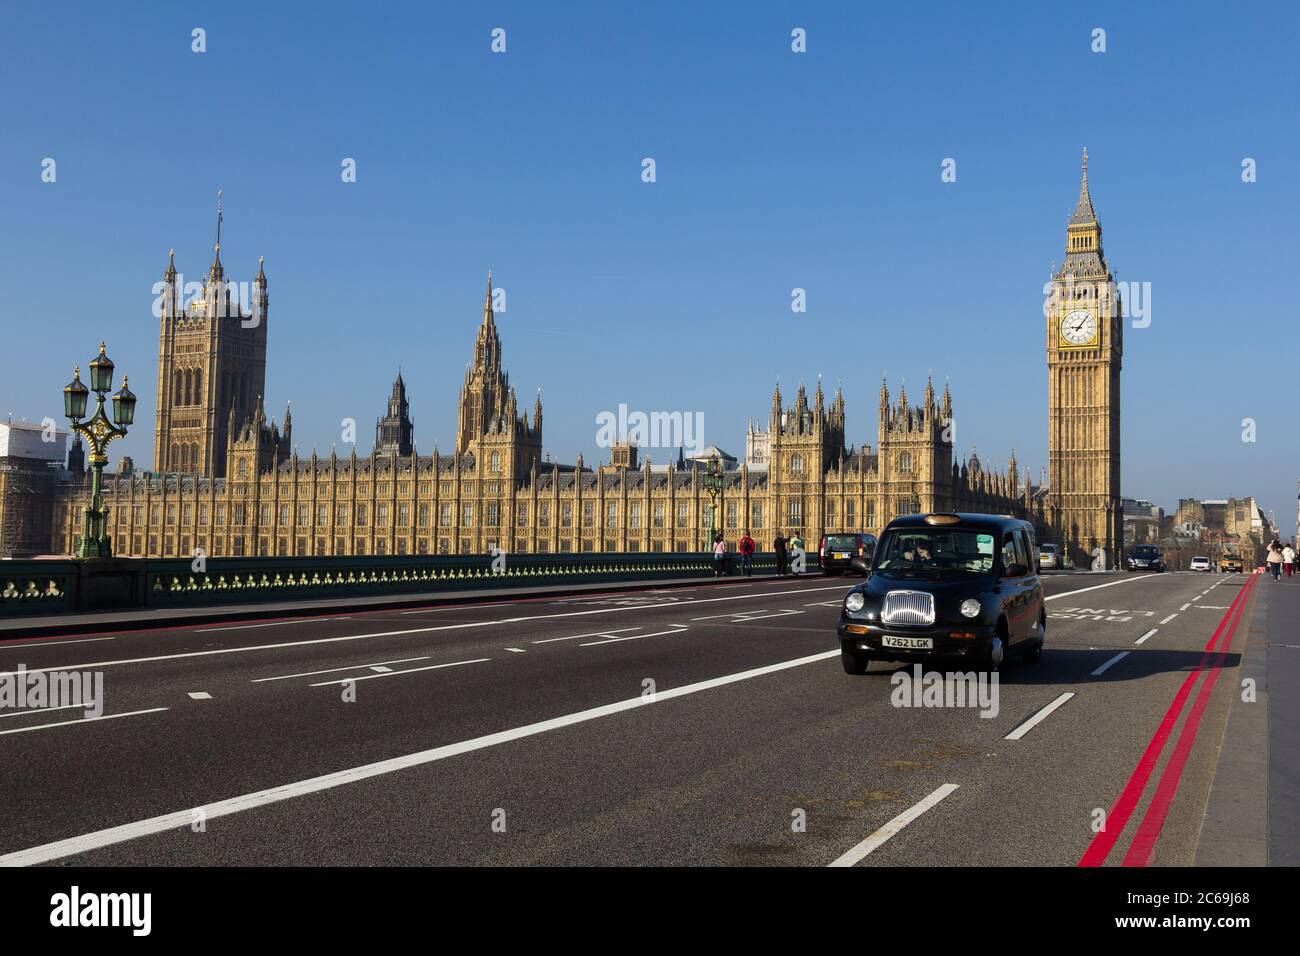 LONDRES, Royaume-Uni - 9 MARS 2014 : l'extérieur de Westminster à Londres depuis le pont de Westminster. Un taxi et des gens peuvent être vus. Banque D'Images